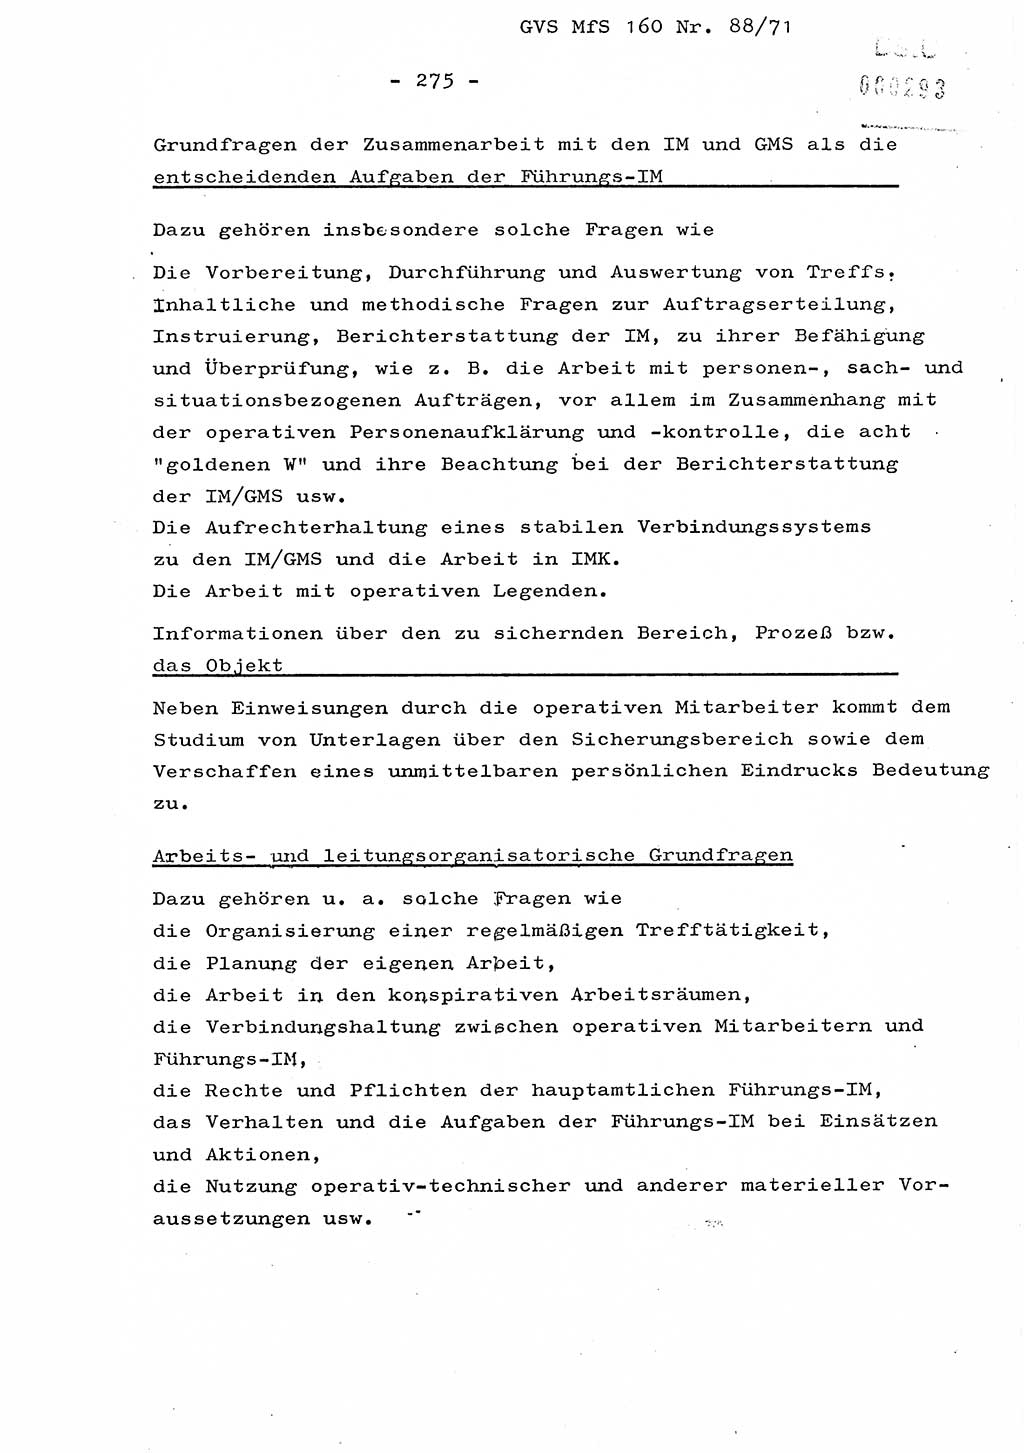 Dissertation Oberstleutnant Josef Schwarz (BV Schwerin), Major Fritz Amm (JHS), Hauptmann Peter Gräßler (JHS), Ministerium für Staatssicherheit (MfS) [Deutsche Demokratische Republik (DDR)], Juristische Hochschule (JHS), Geheime Verschlußsache (GVS) 160-88/71, Potsdam 1972, Seite 275 (Diss. MfS DDR JHS GVS 160-88/71 1972, S. 275)